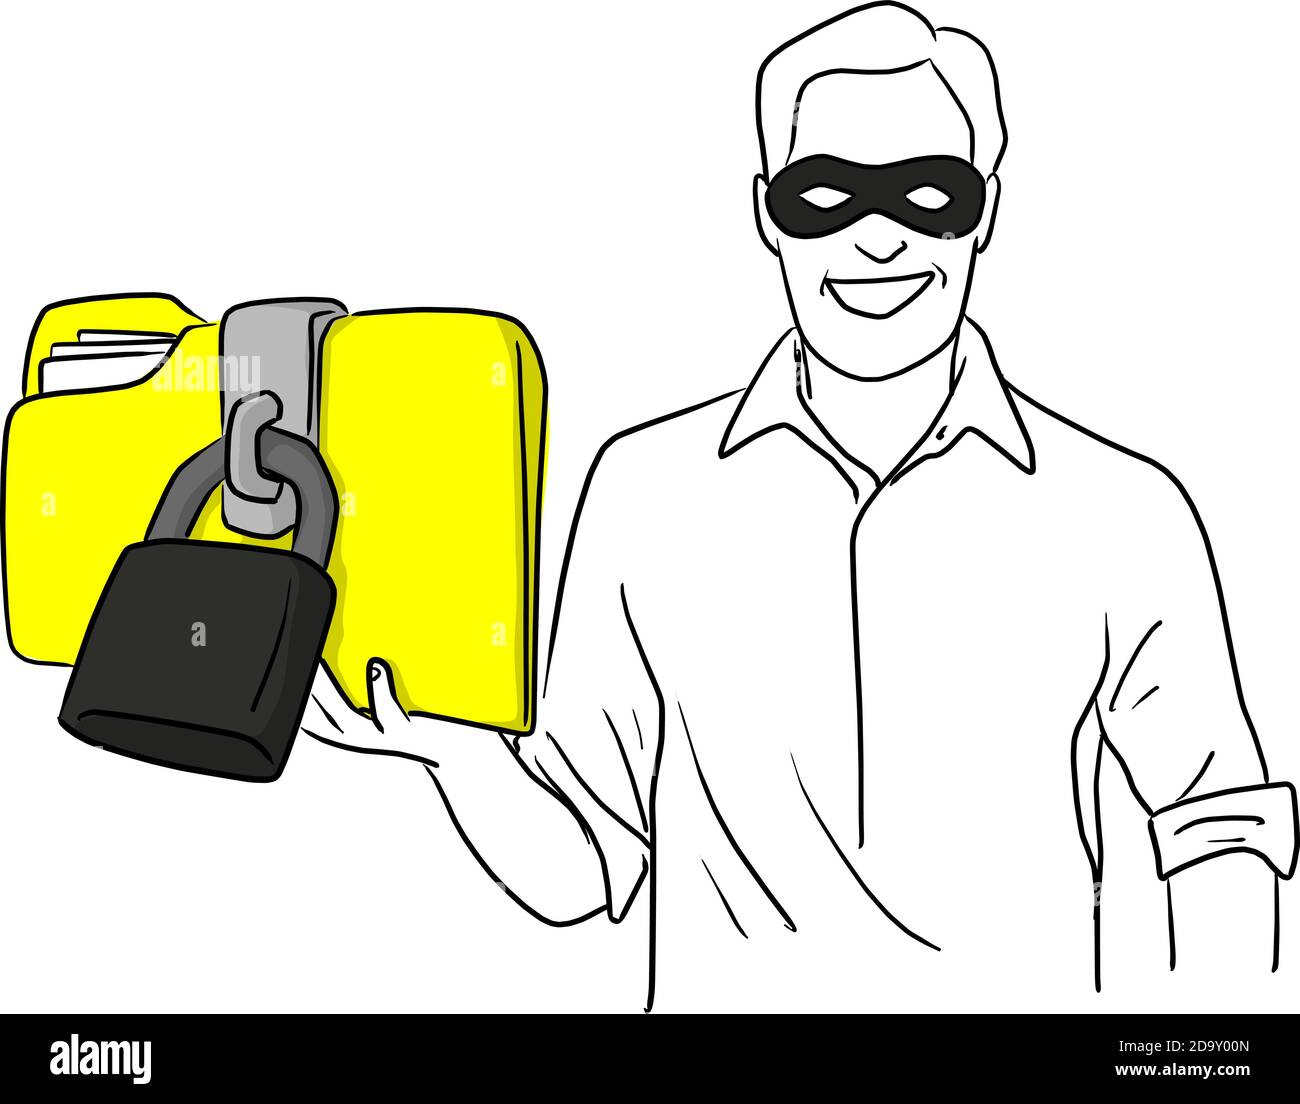 voleur de virus hacker vêtu d'un masque foncé volé grand jaune dossier avec schéma de vecteur de verrouillage esquisse doodle dessiné à la main isolé sur fond blanc Illustration de Vecteur